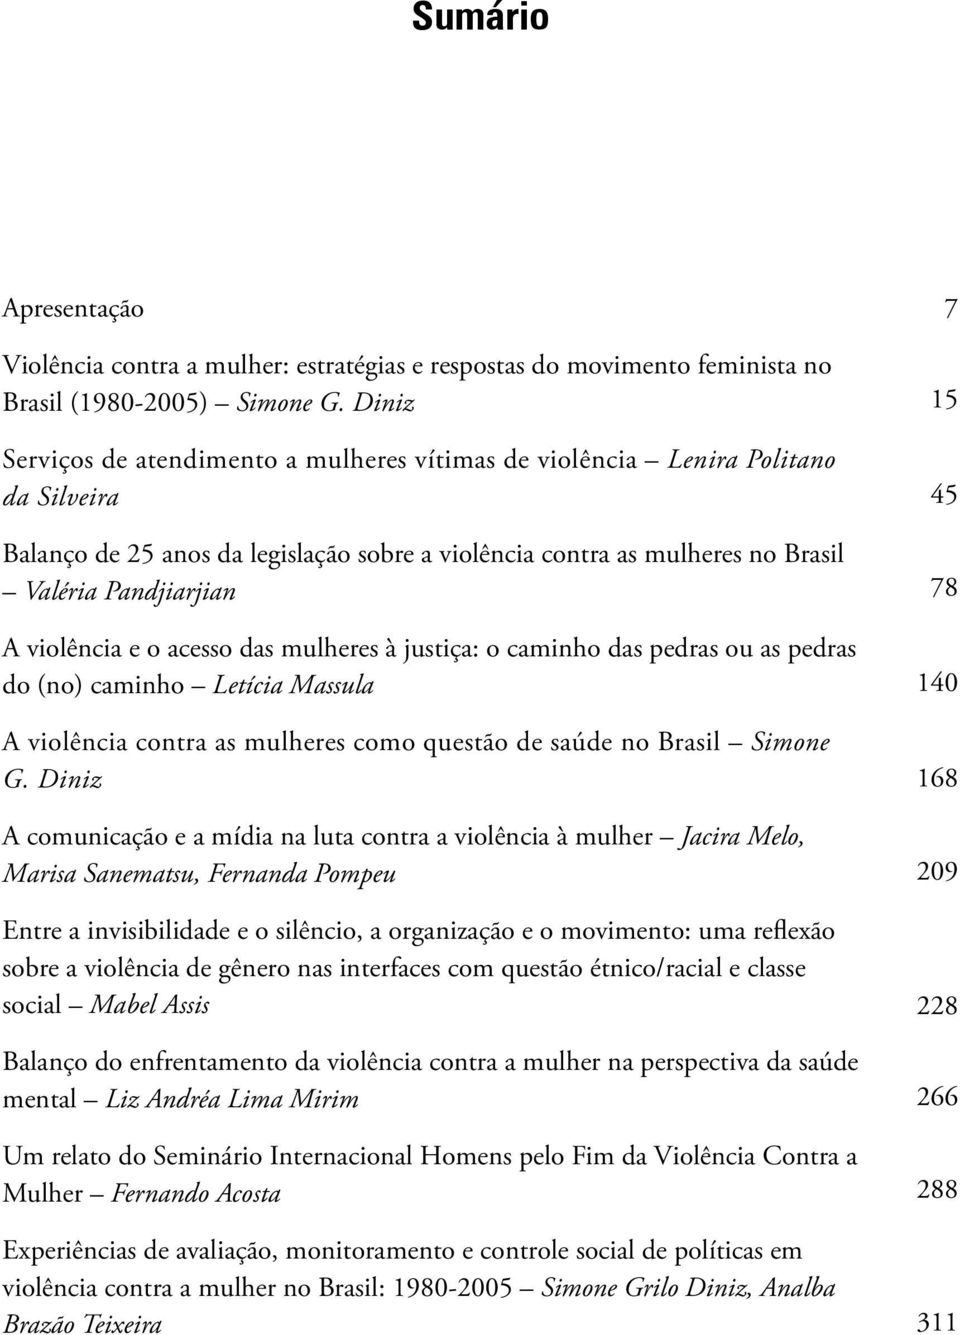 violência e o acesso das mulheres à justiça: o caminho das pedras ou as pedras do (no) caminho Letícia Massula A violência contra as mulheres como questão de saúde no Brasil Simone G.